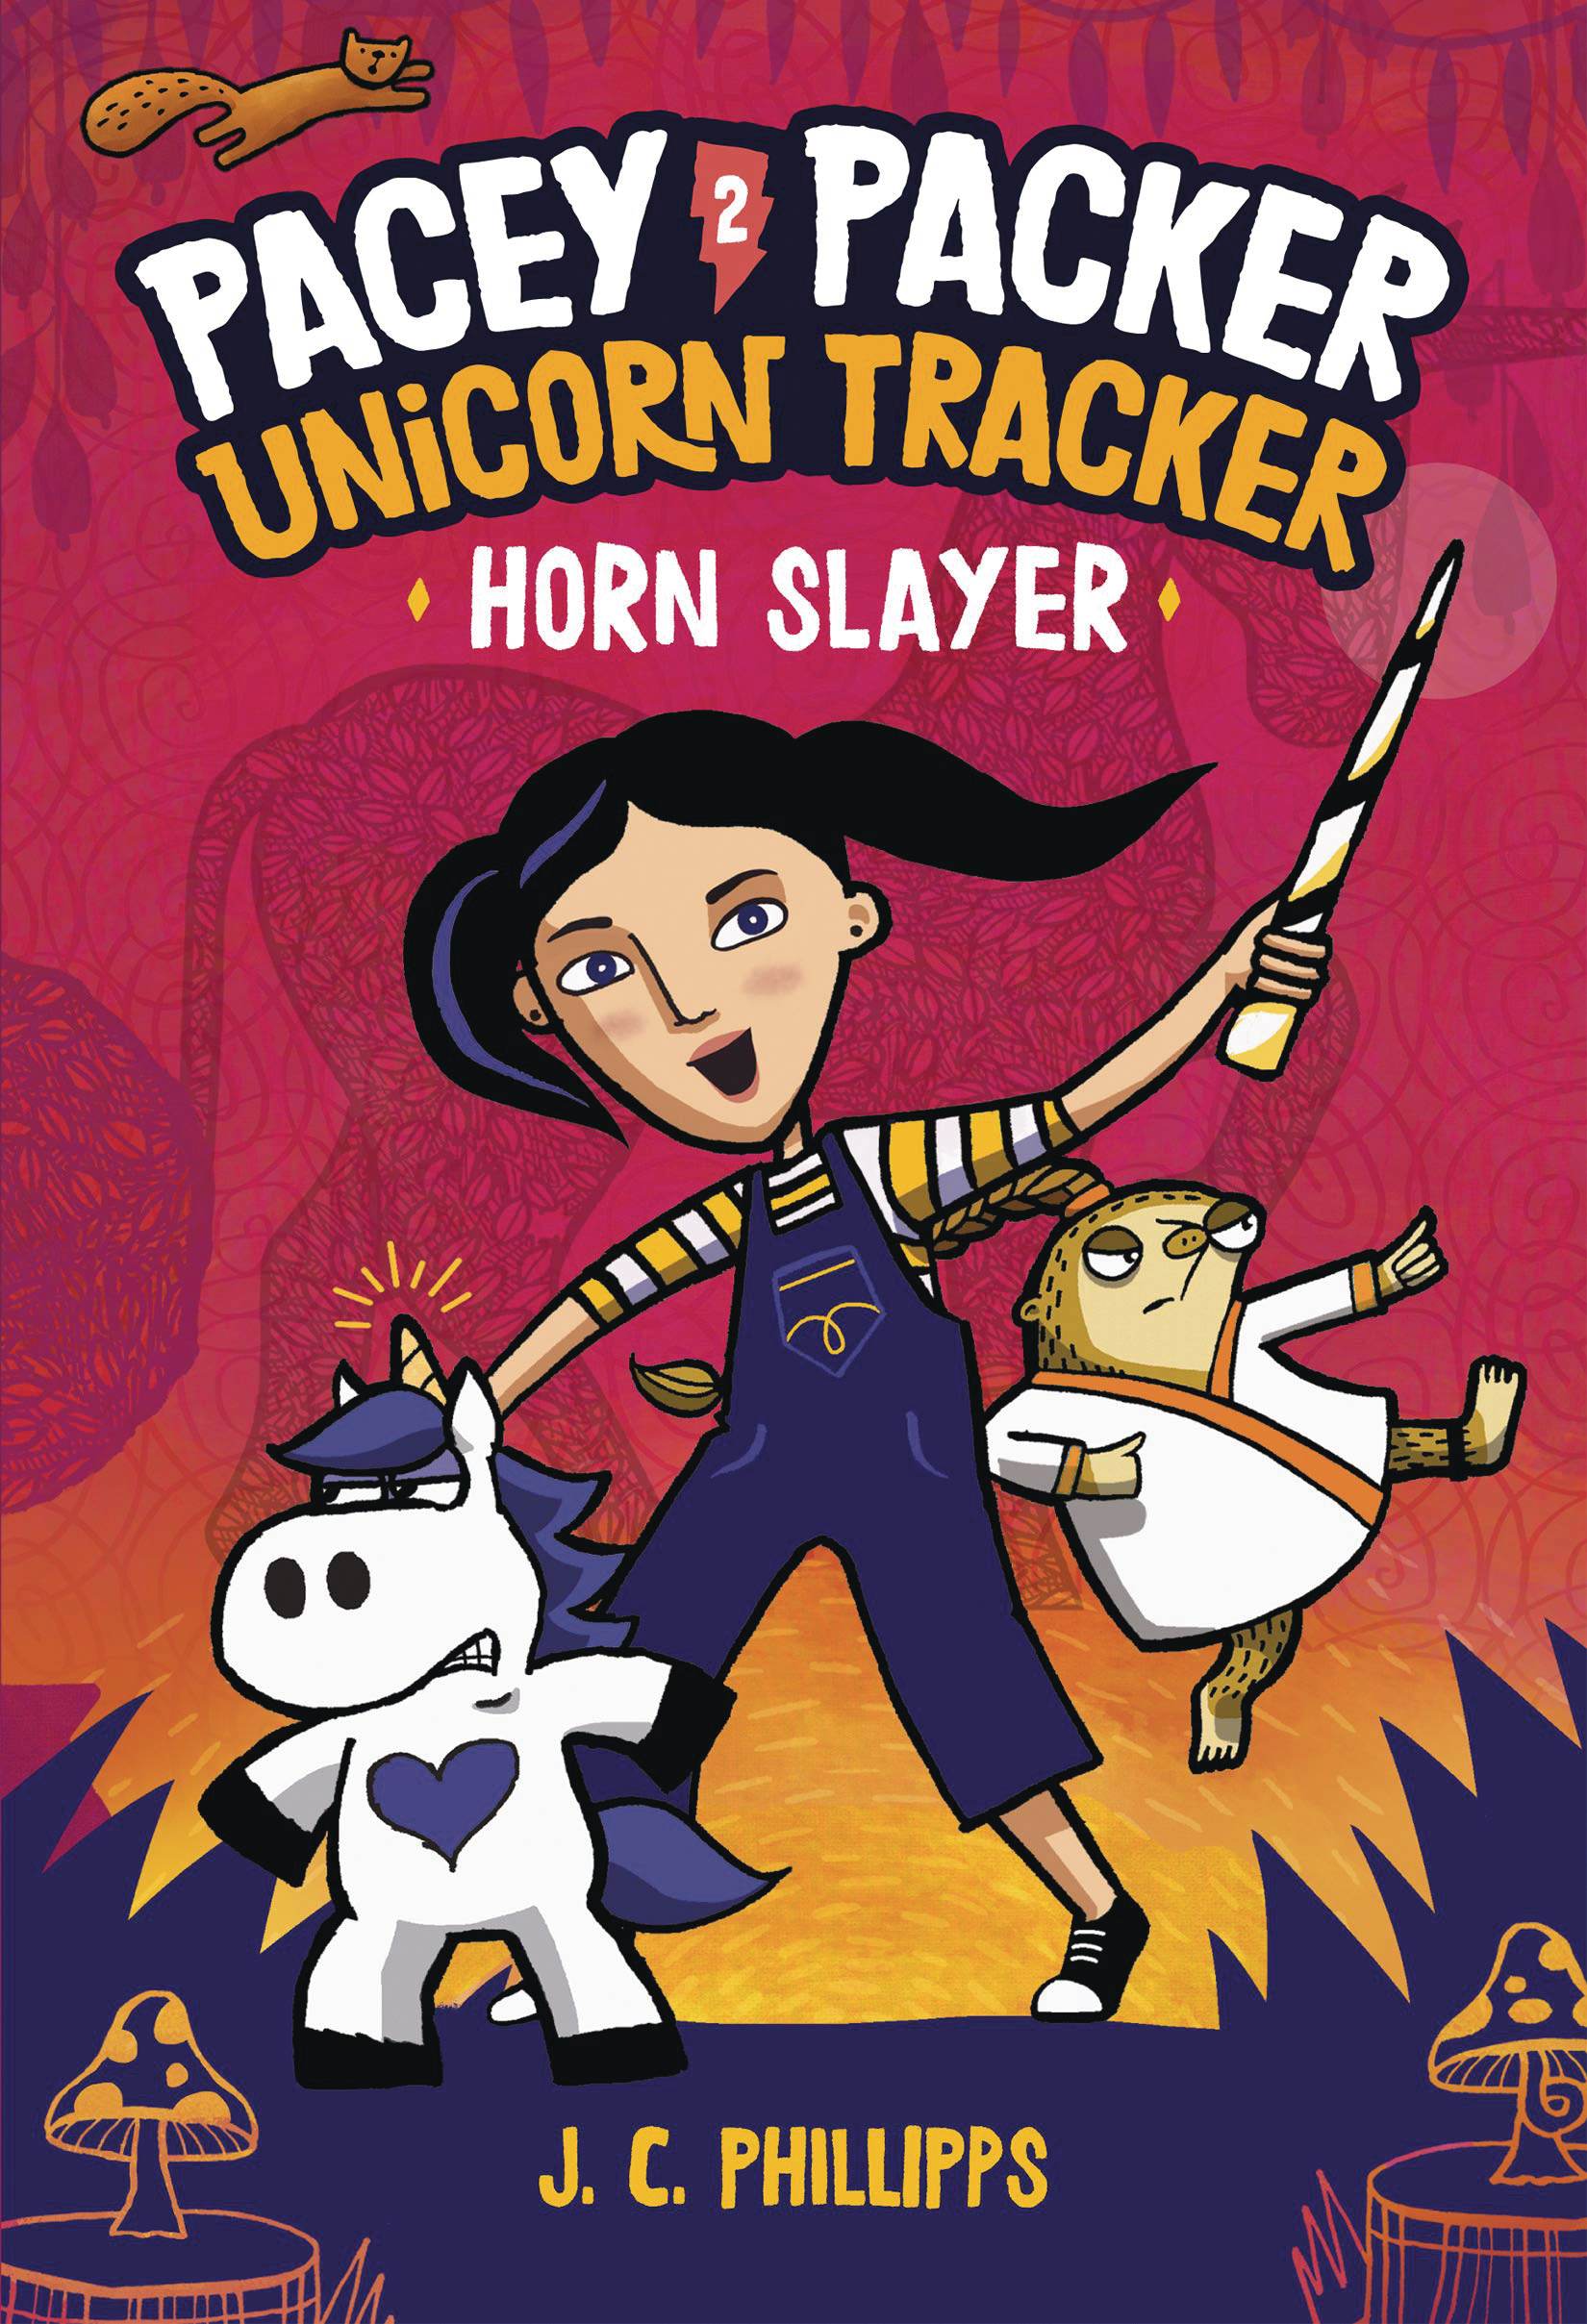 Pacey Packer Unicorn Tracker Hardcover Graphic Novel Volume 2 Horn Slayer